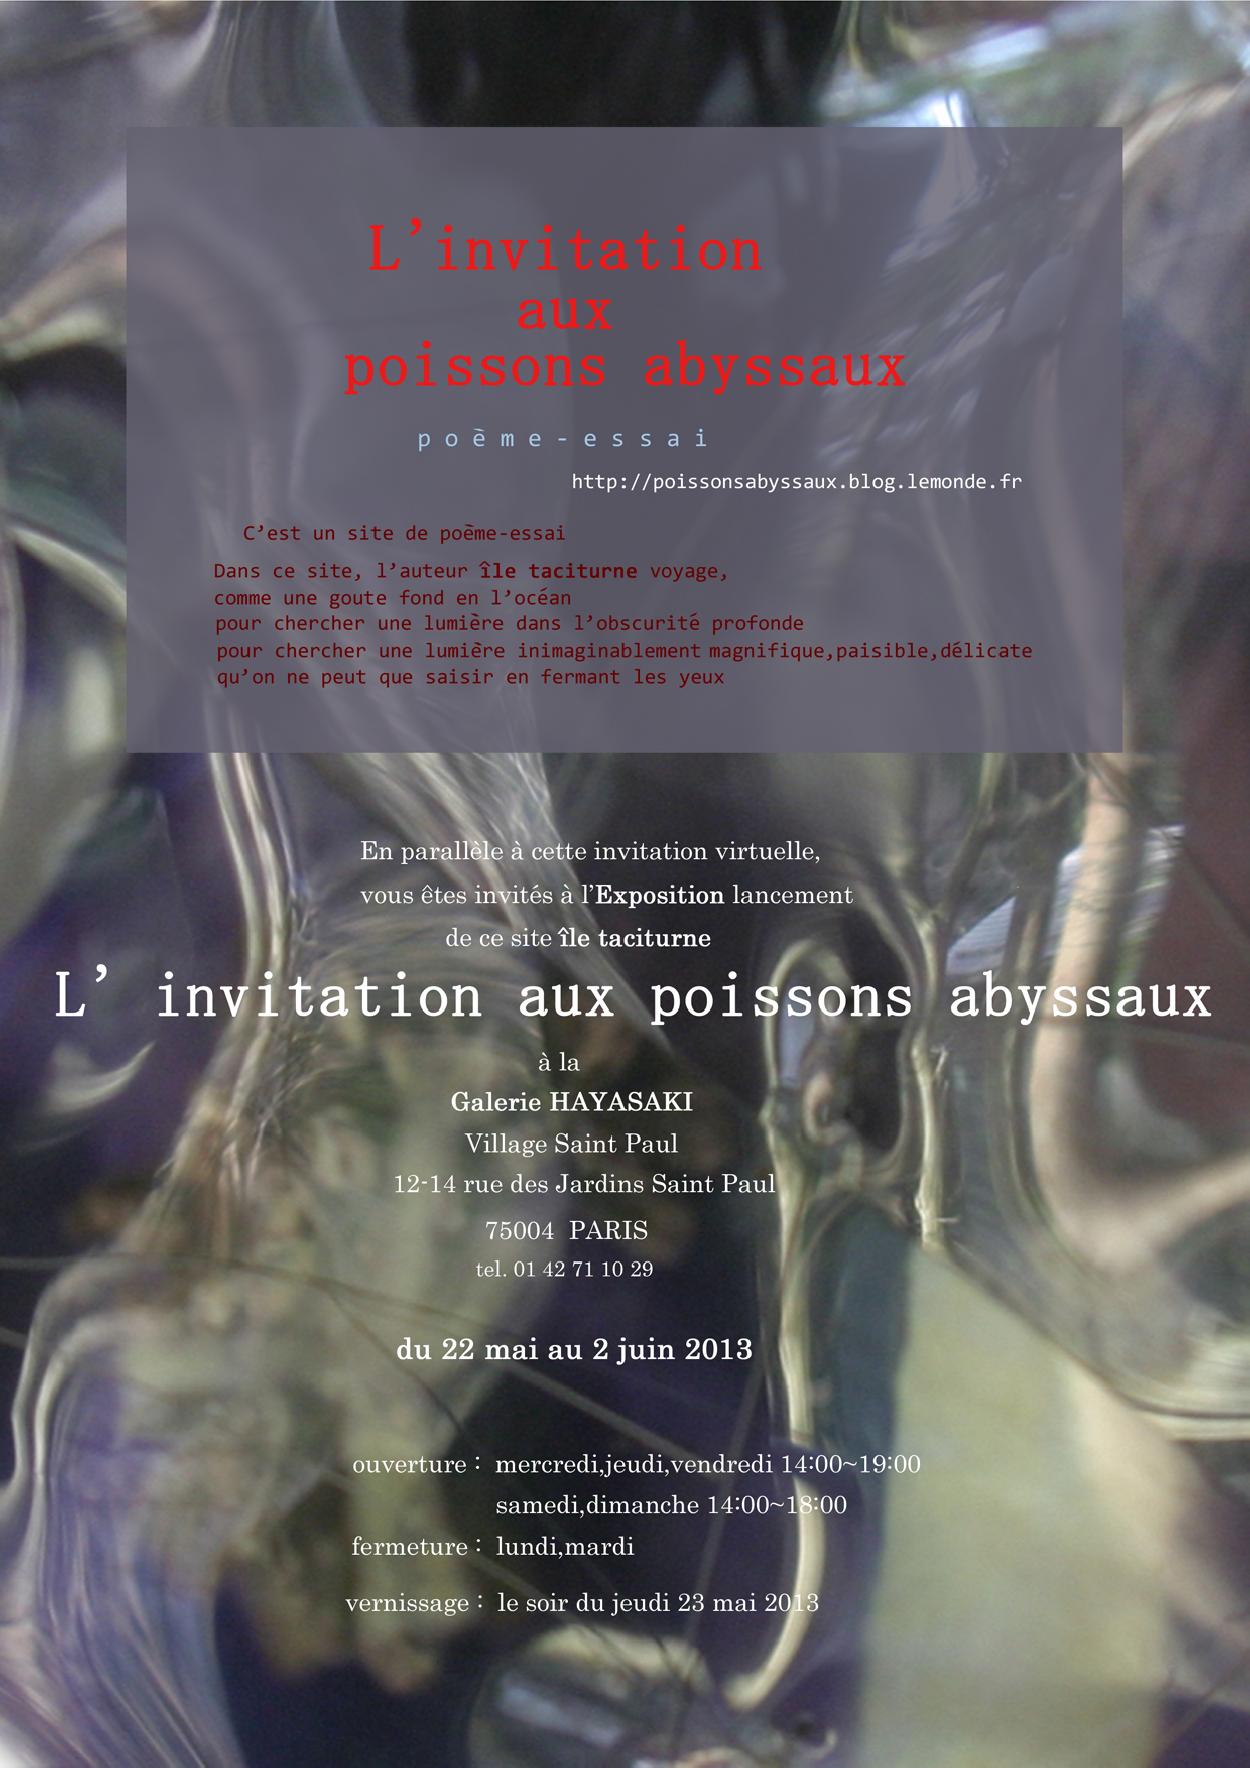 île taciturne, L'invitation aux poissons abyssaux, 22 mai - 2 juin 2013